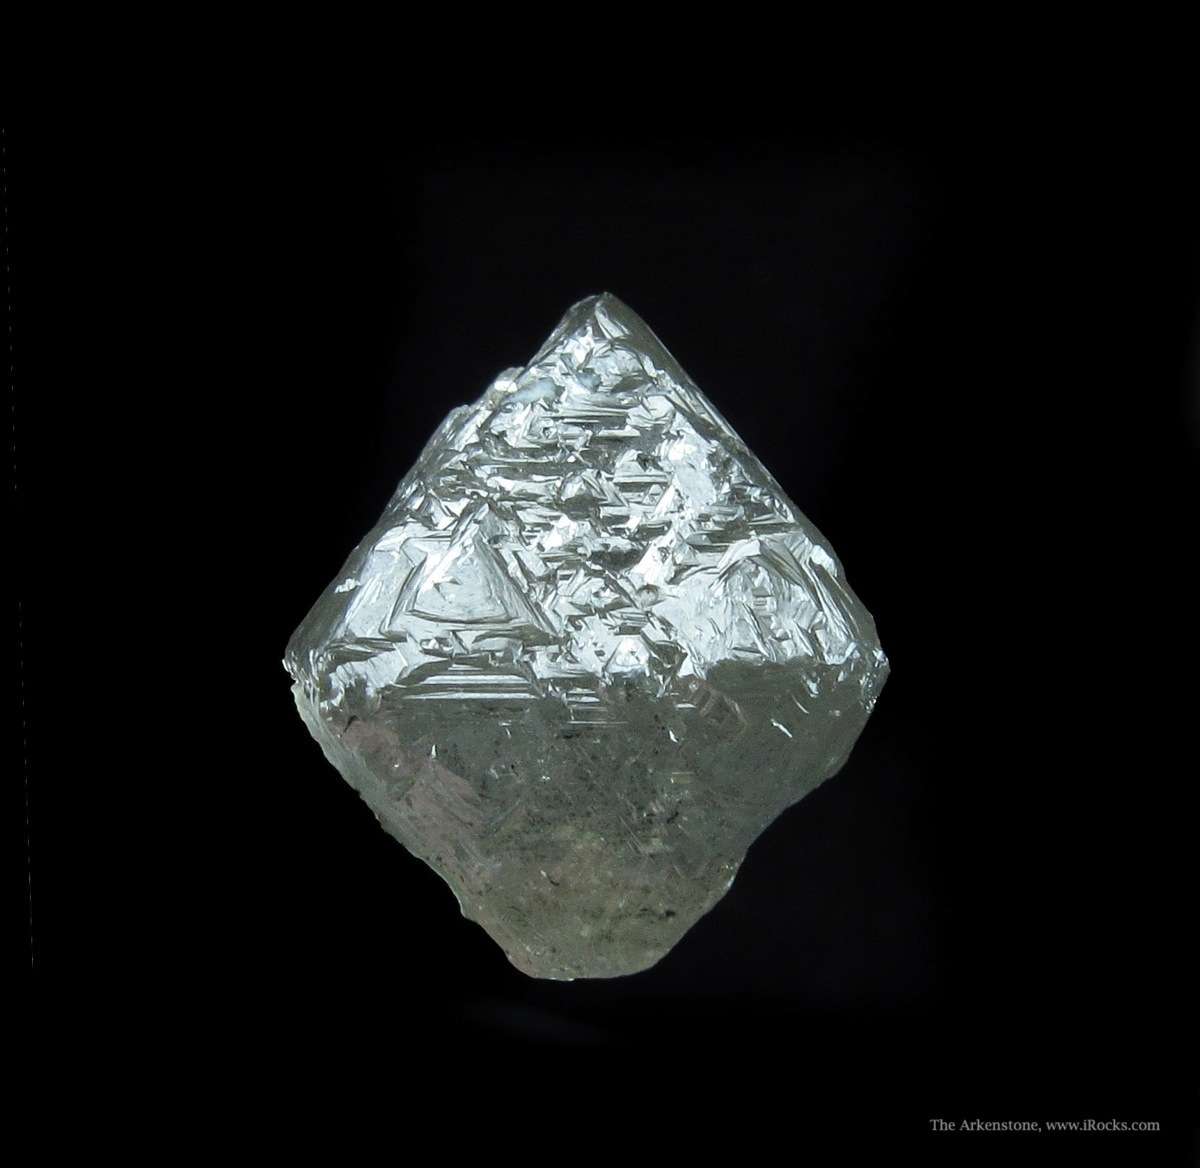 https://cdn.irocks.com/storage/media/71473/JWL14A-arkenstone-fine-minerals-little-jewels-38a.JPG